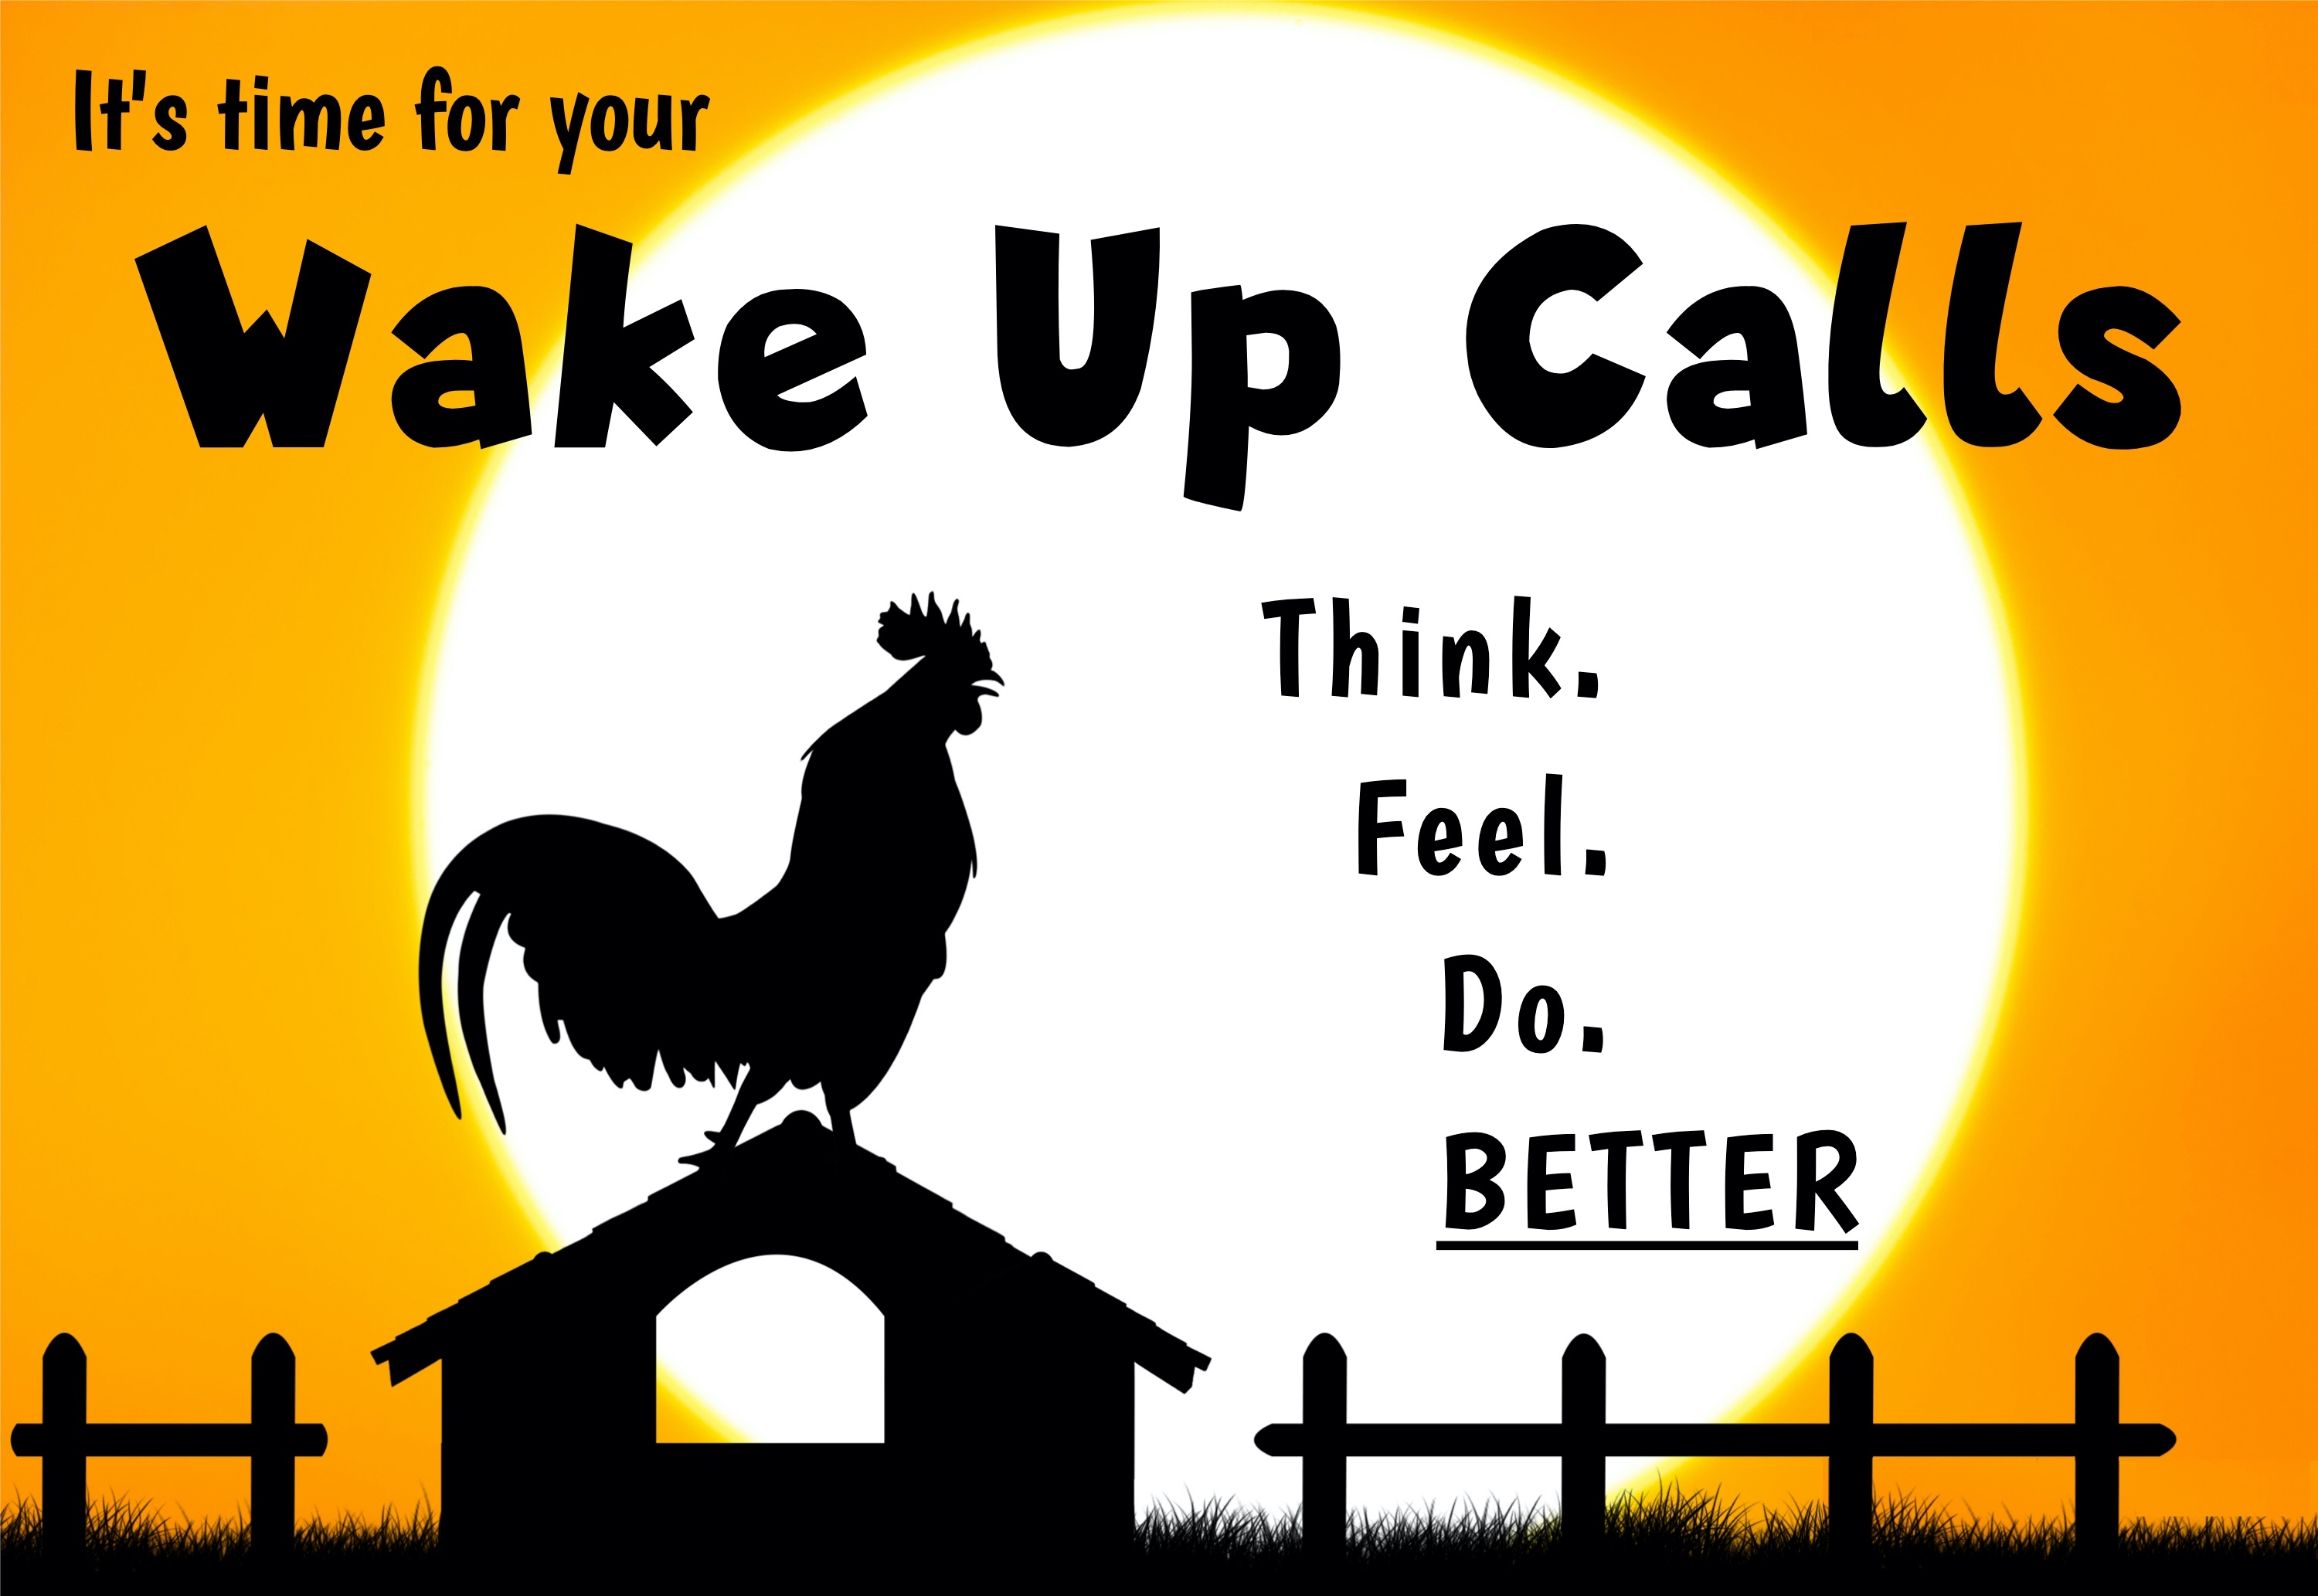 Wake Up Calls